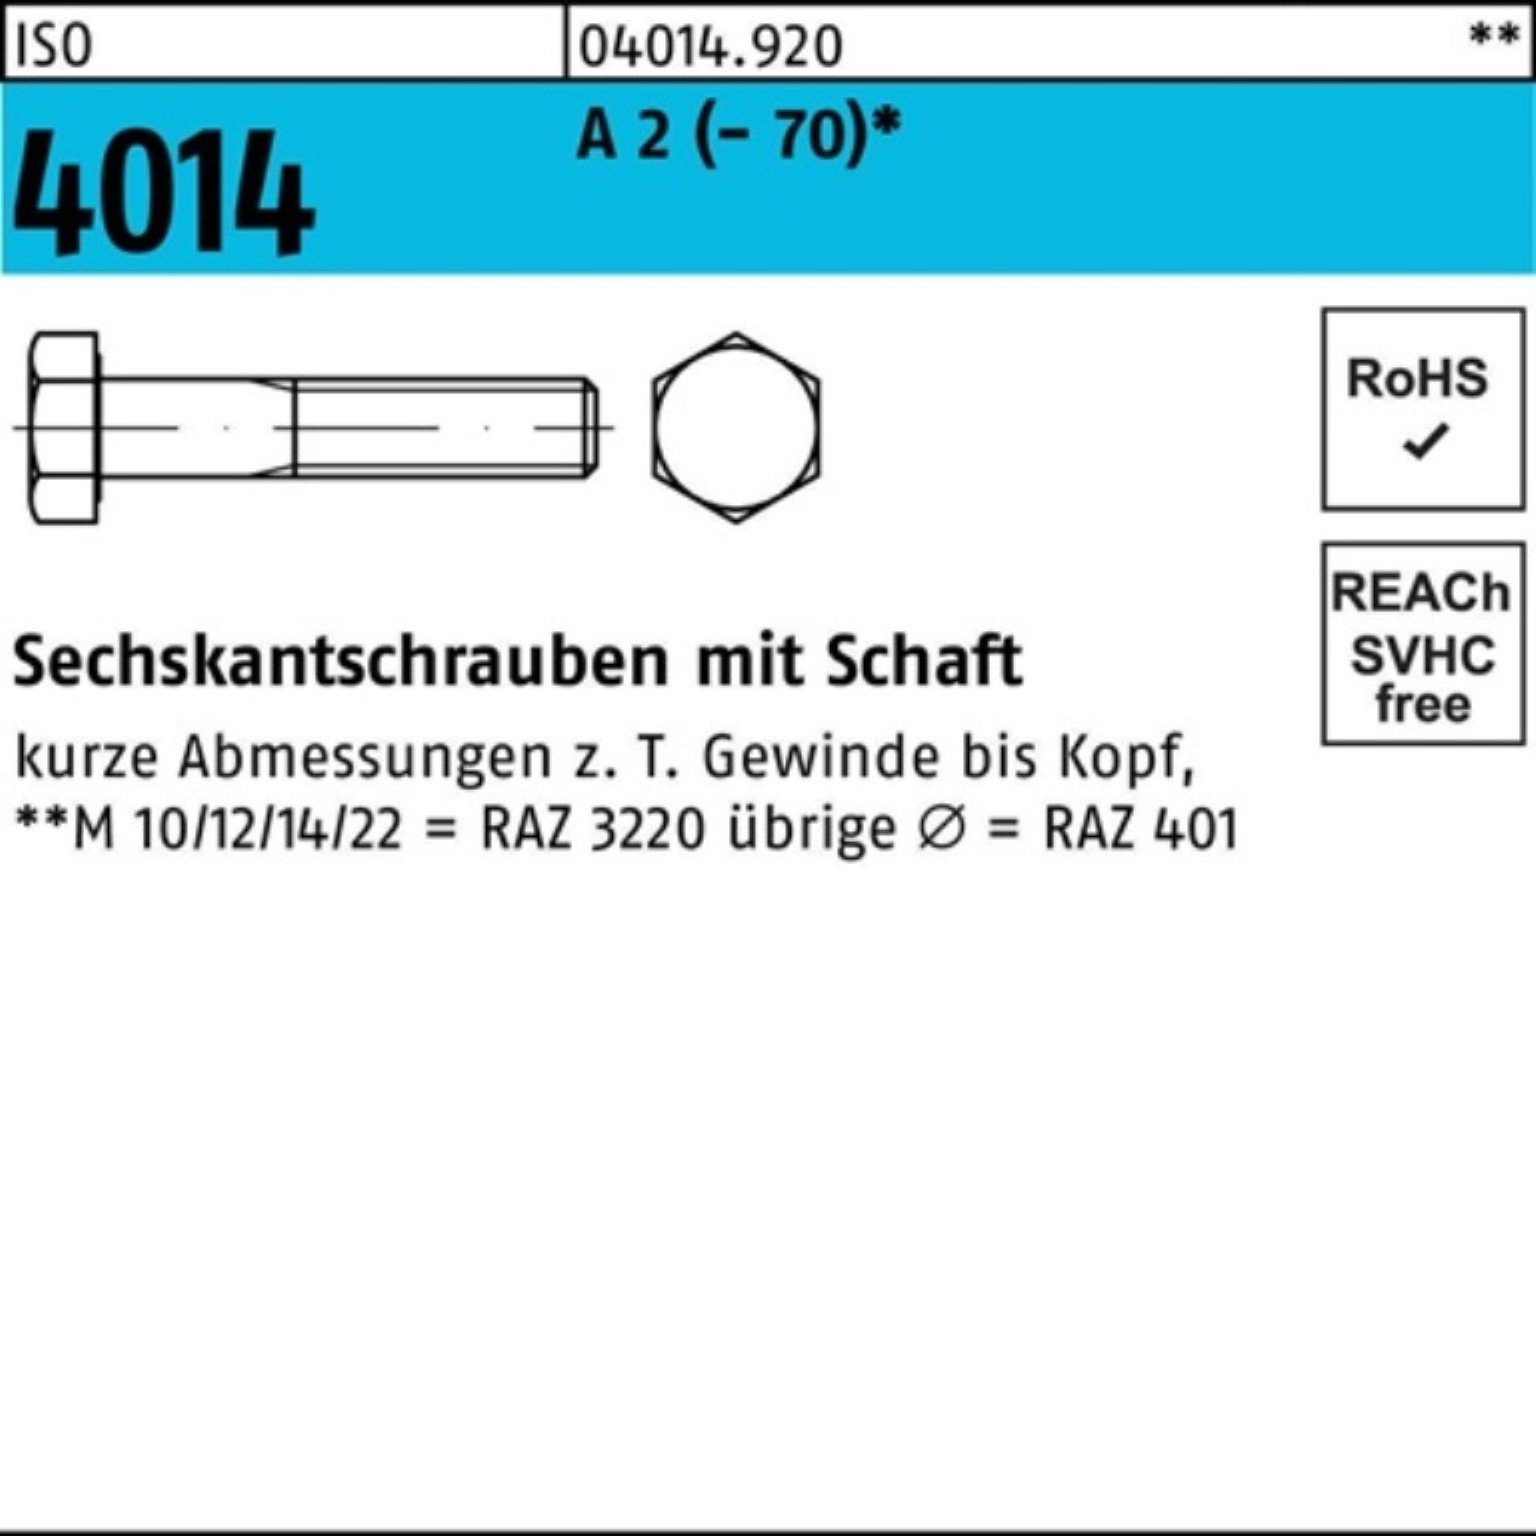 Bufab Sechskantschraube 100er Pack Sechskantschraube ISO 4014 Schaft M20x 100 A 2 (70) 1 St